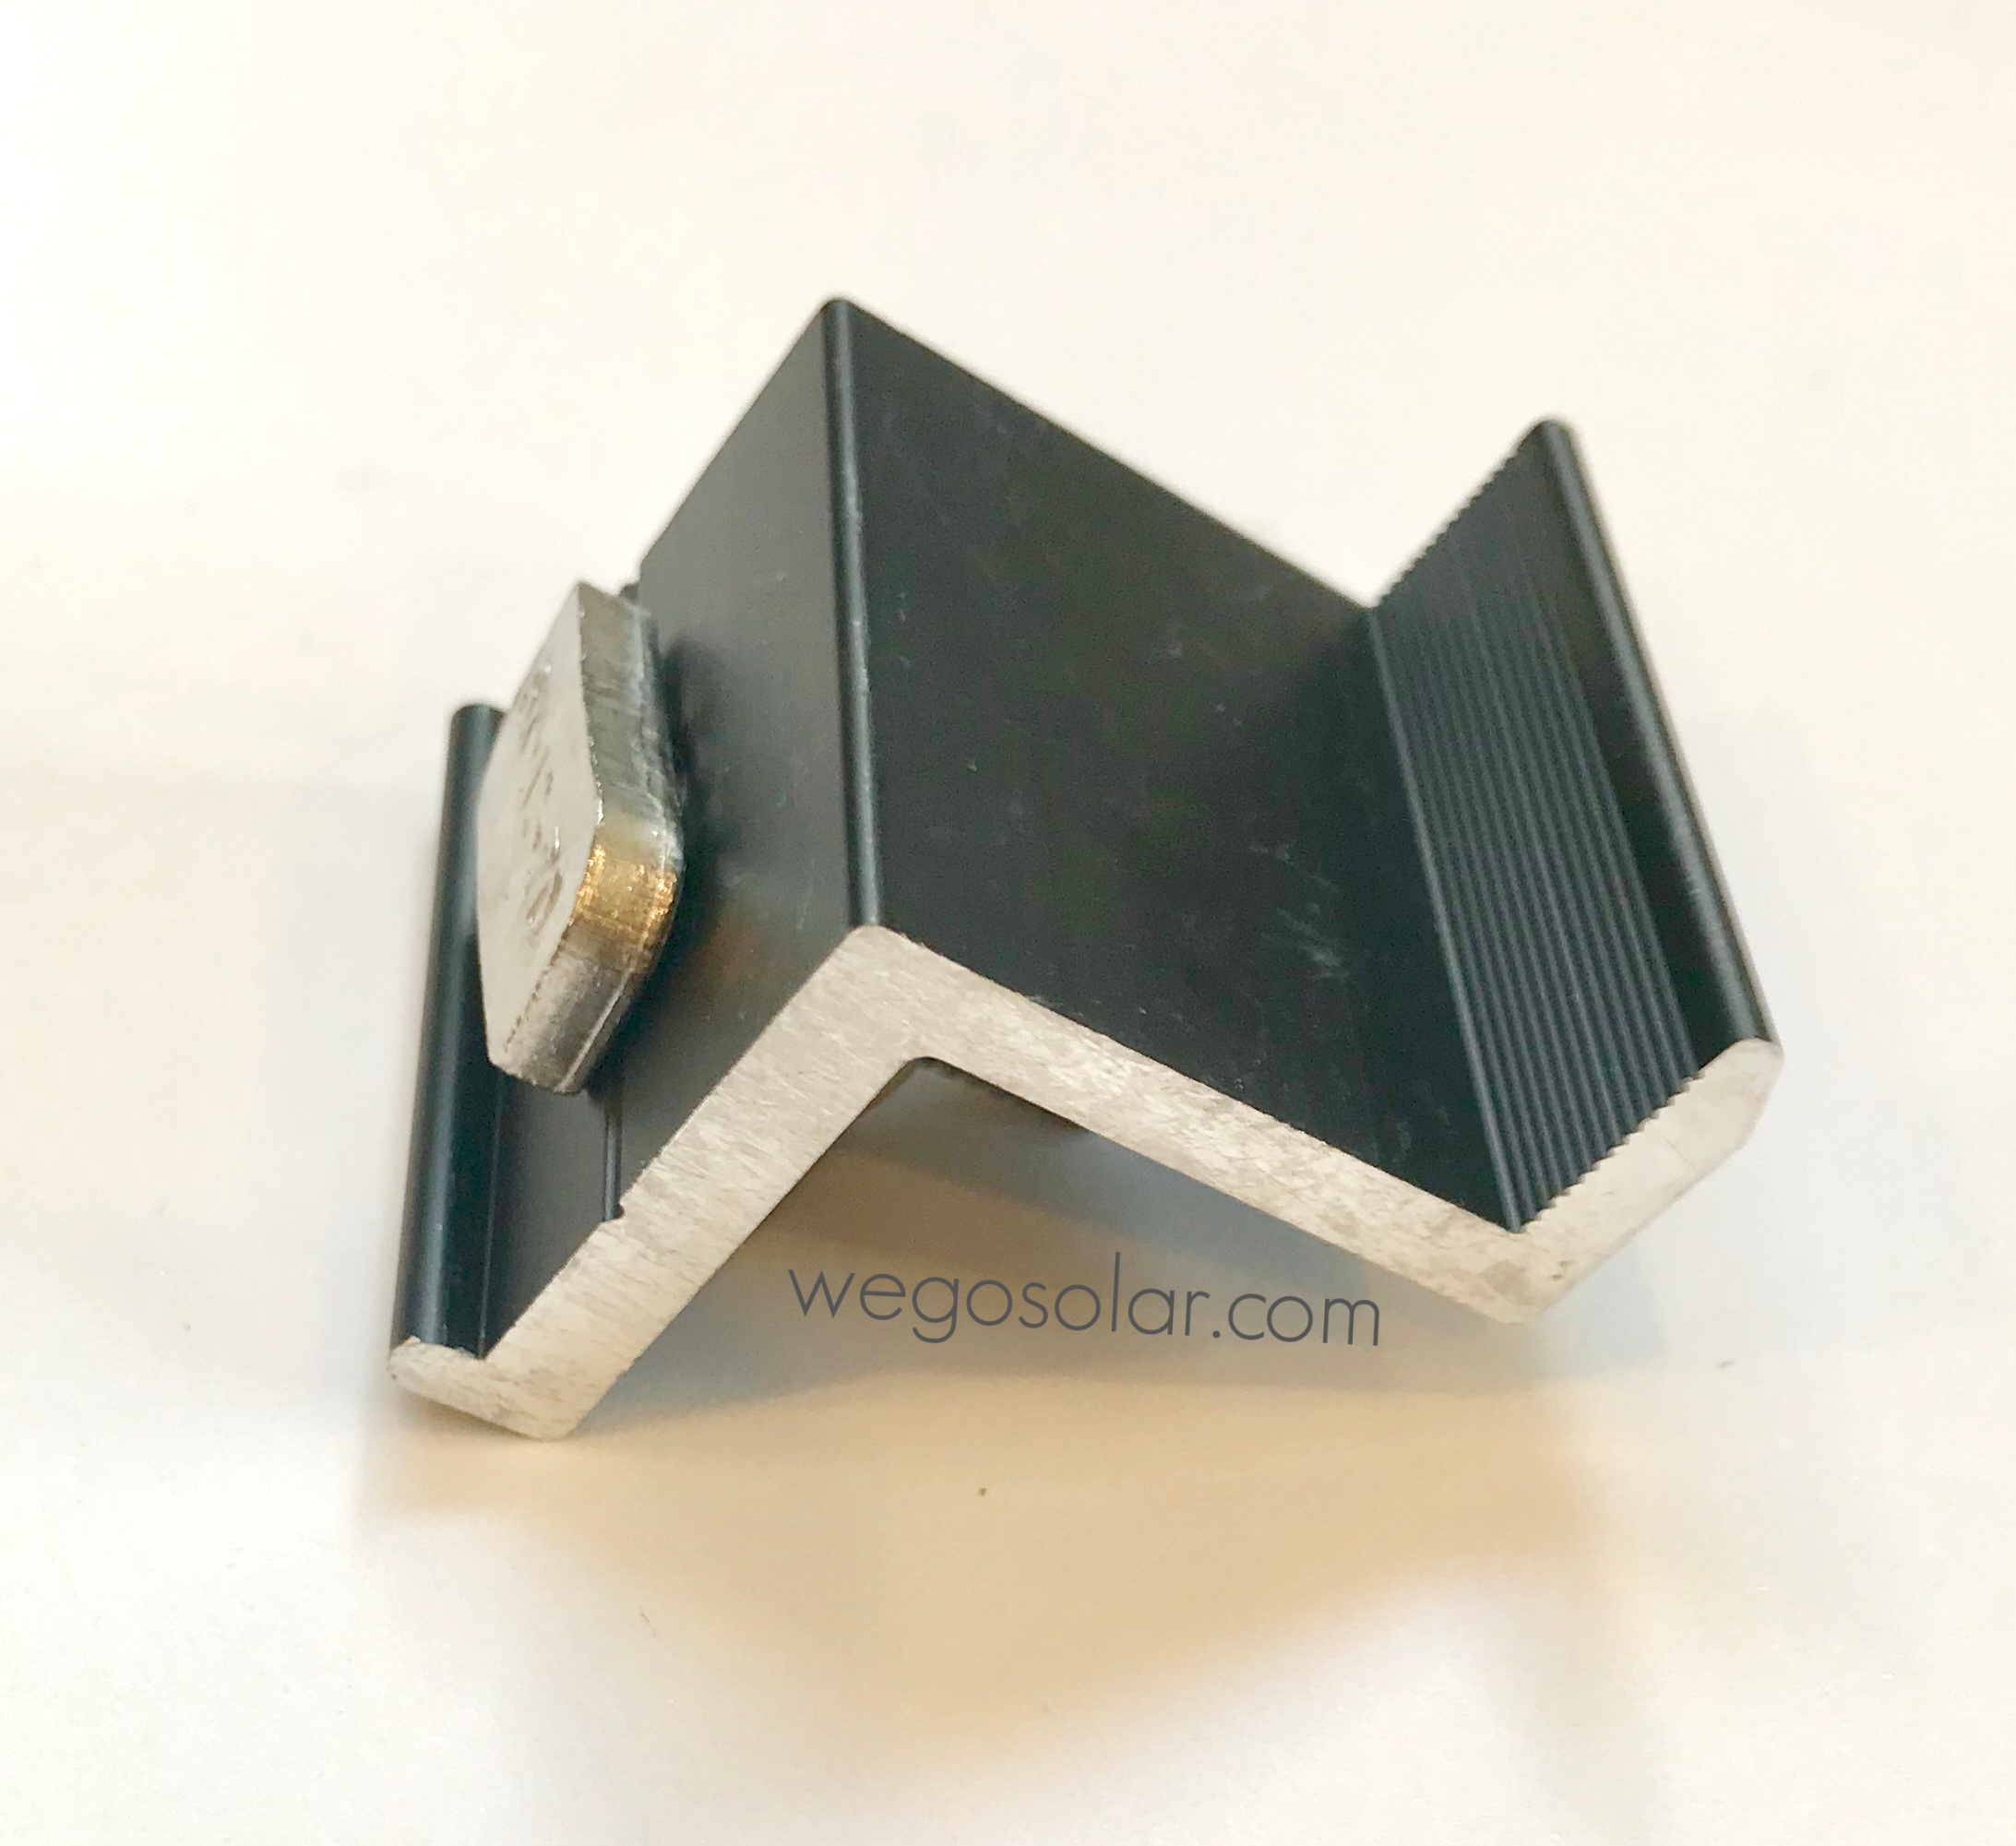 fastrack-end-clamp-for-solar-panel-racking-32mm-black.jpg